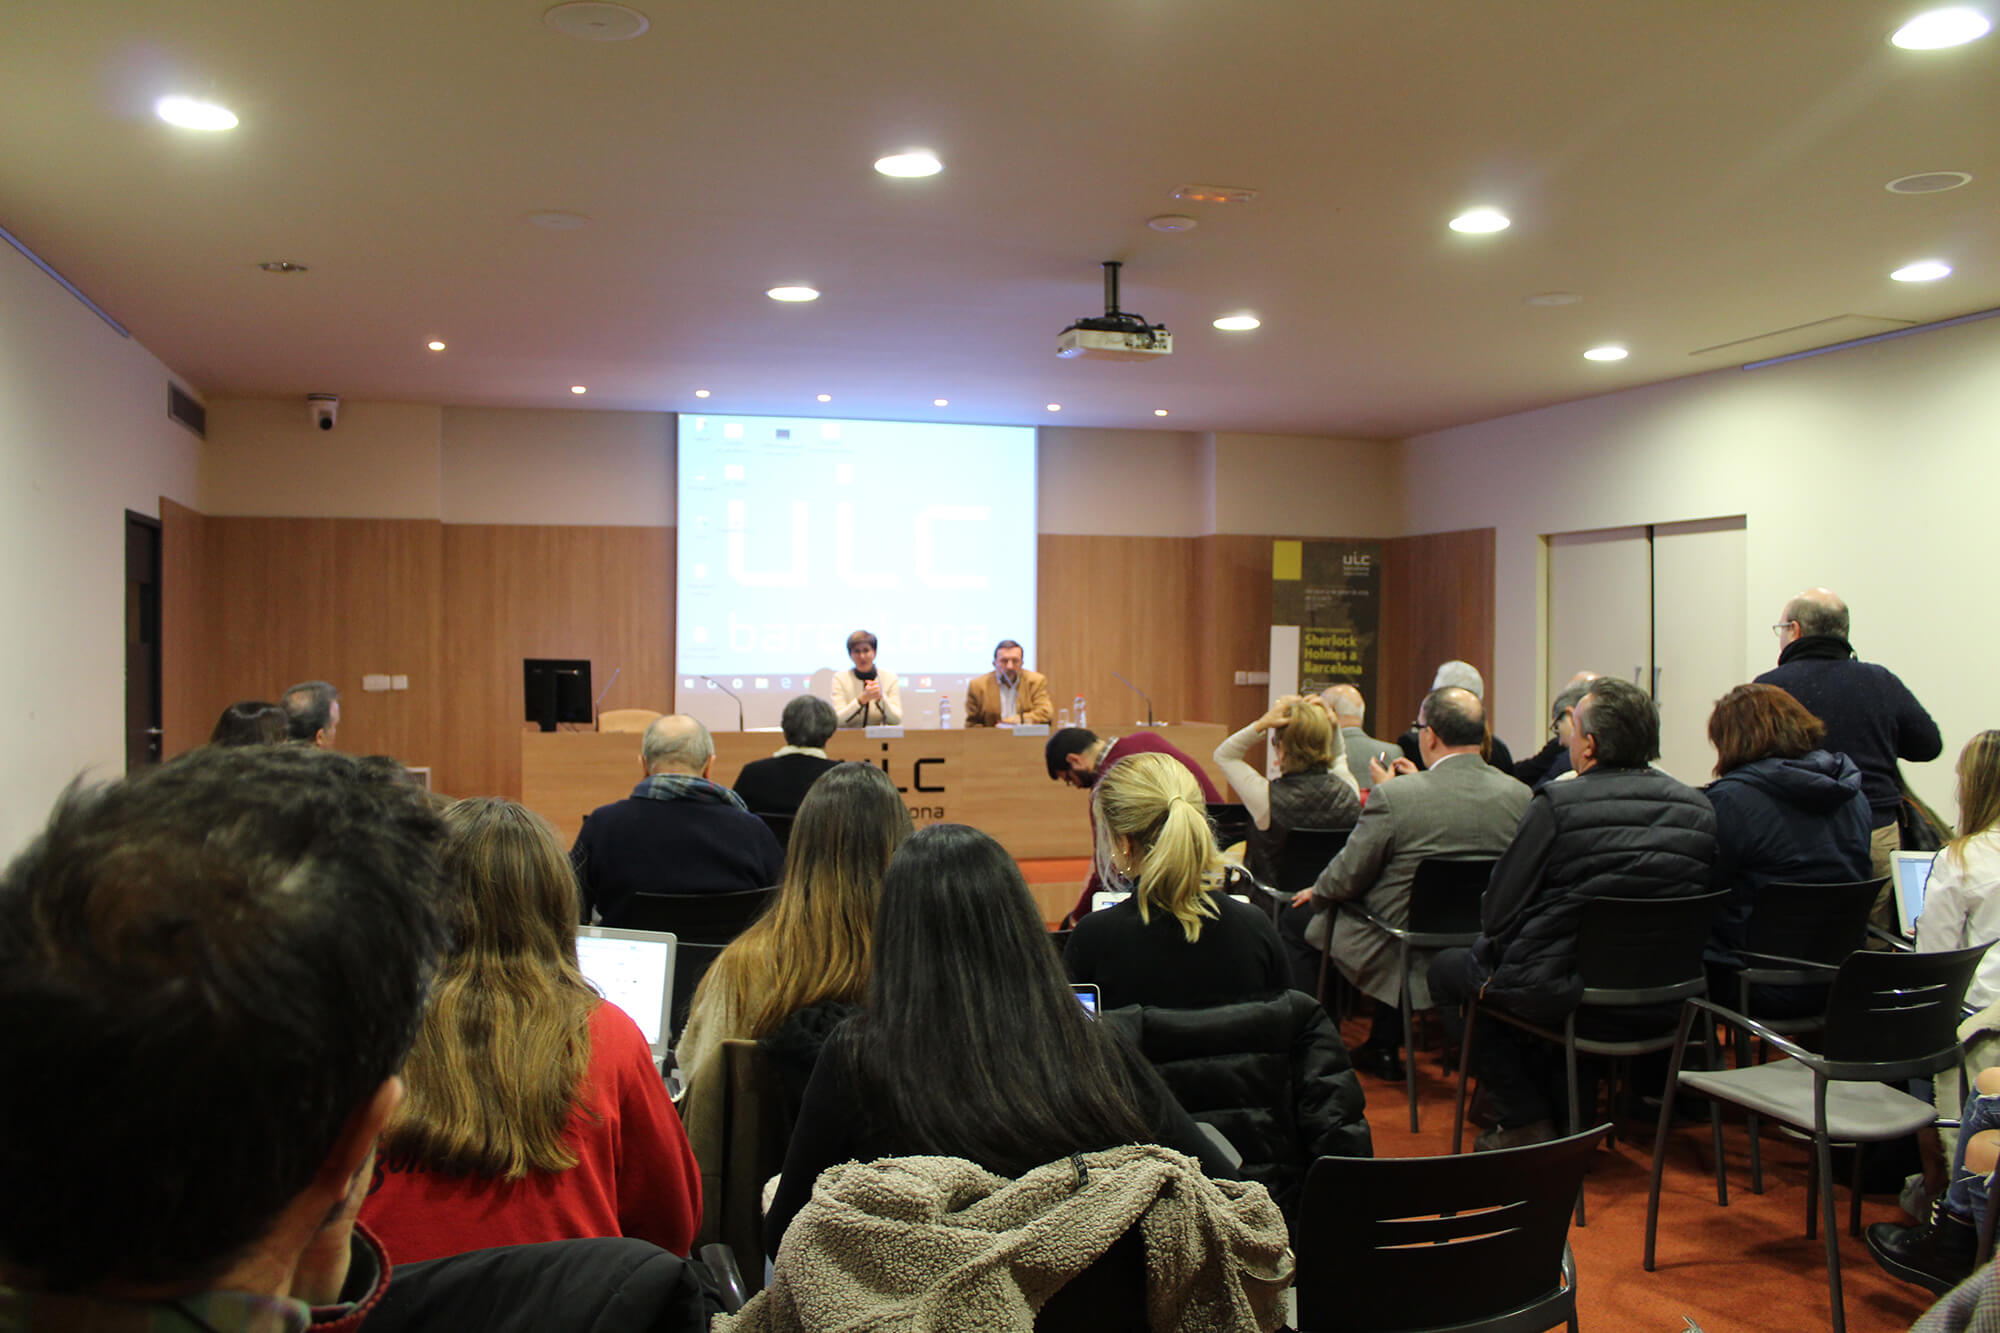 Teresa Vallès, profesora de UIC Barcelona. Conferencia “Carlos Pujol y la novela policíaca: la literatura como diversión inteligente”. UIC Barcelona, 30 de enero de 2019.